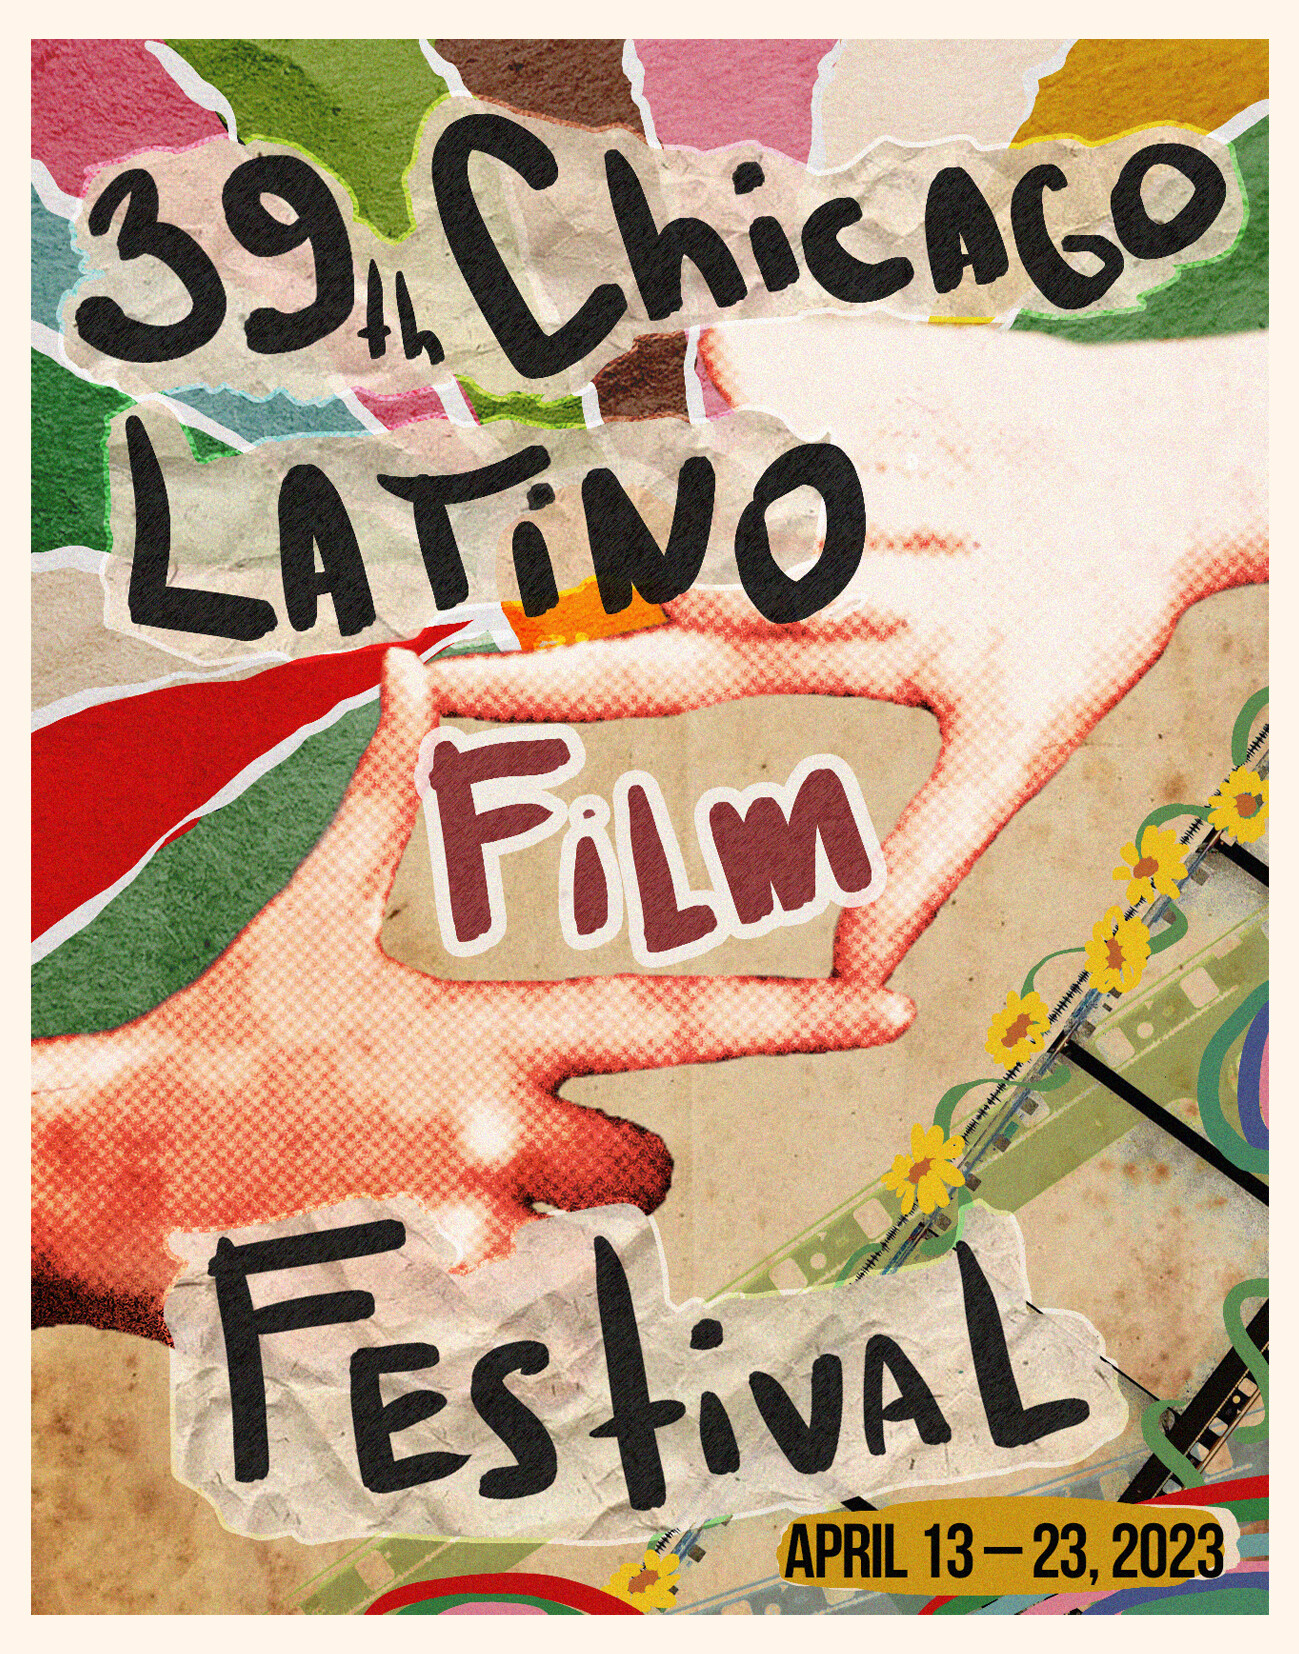 ArtStation - poster for 39th Chicago Latino Film Festival